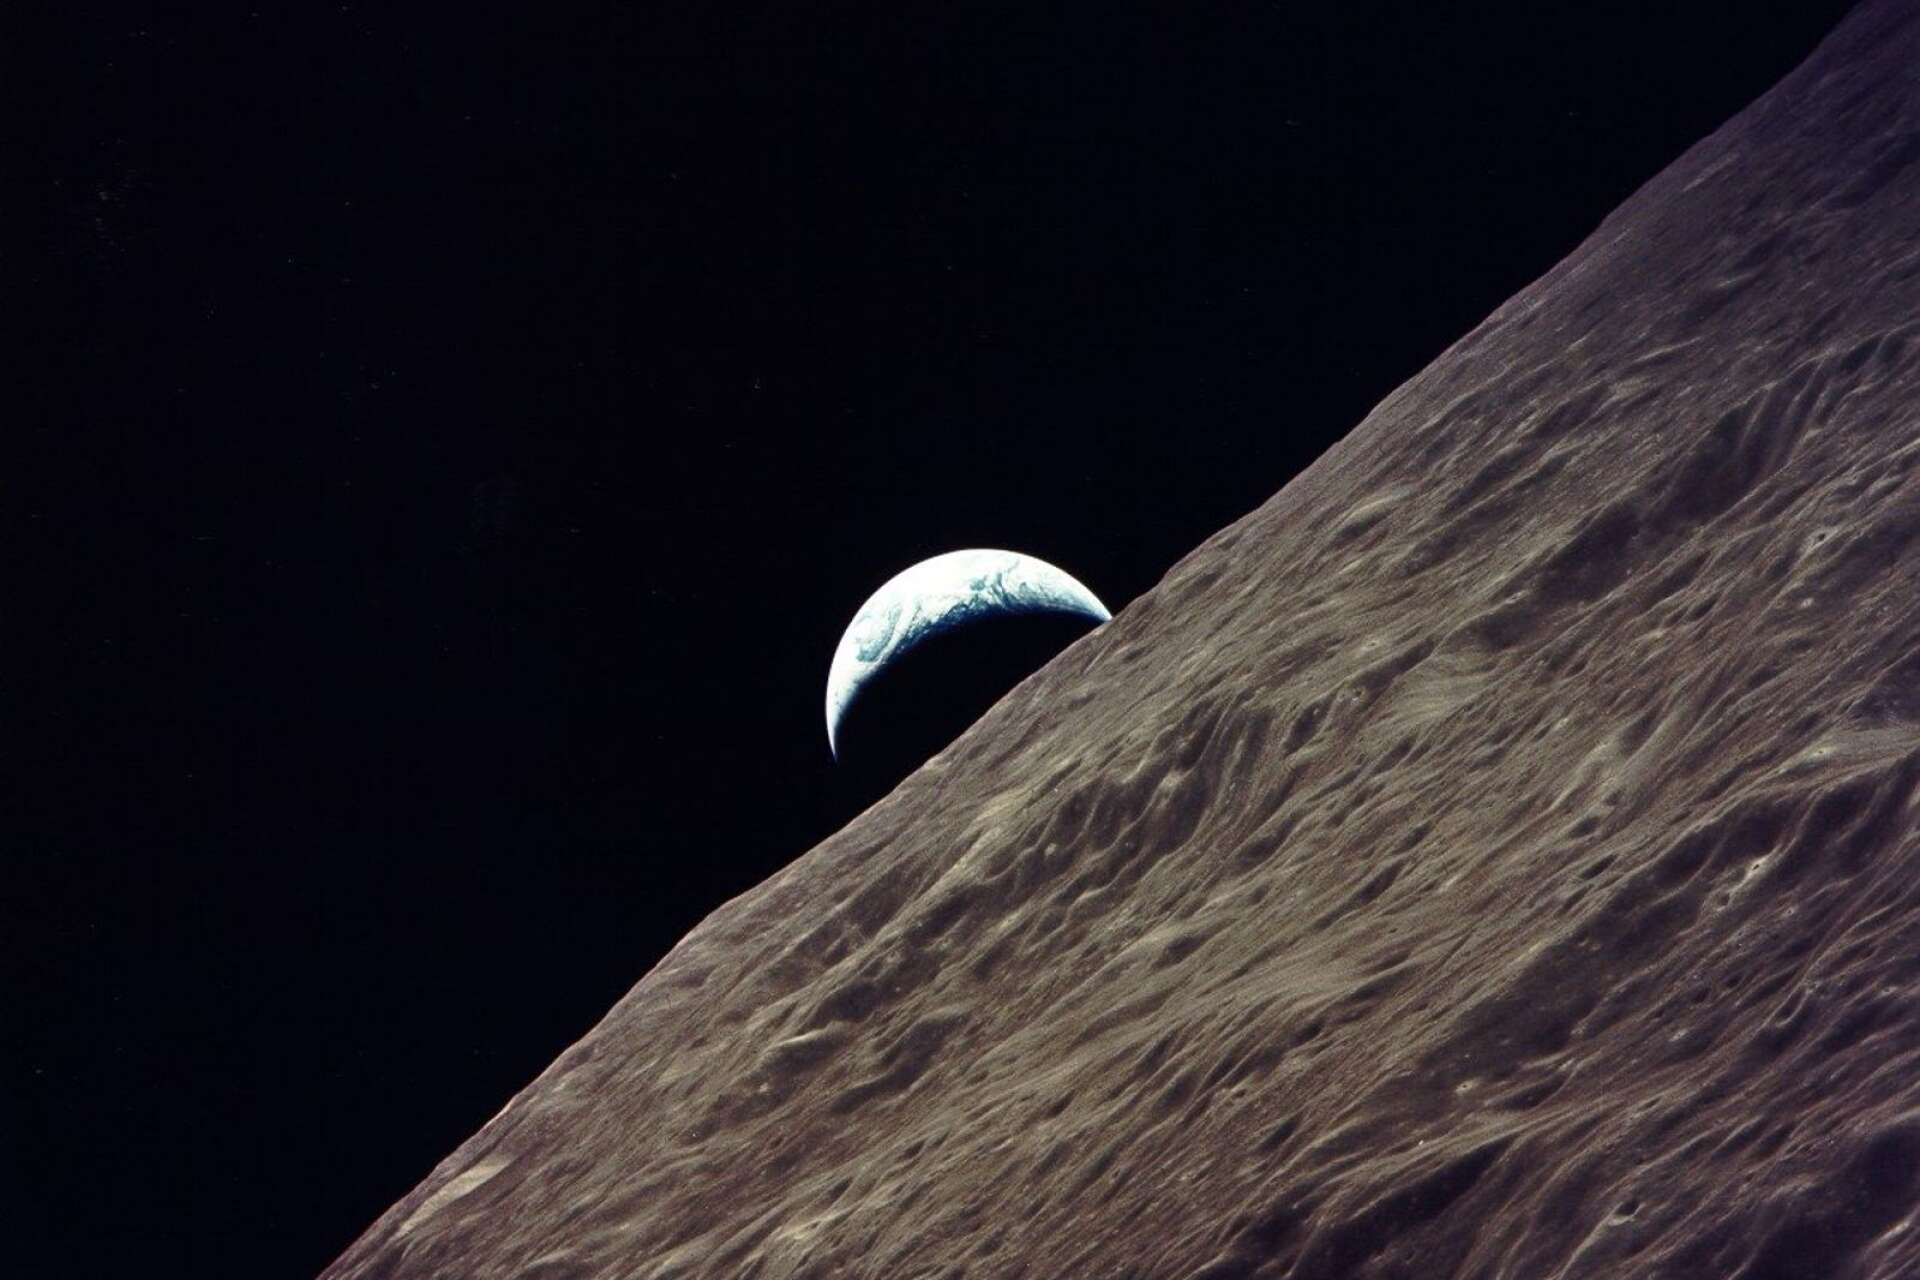 Jorduppgång sedd i omloppsbana runt månen.